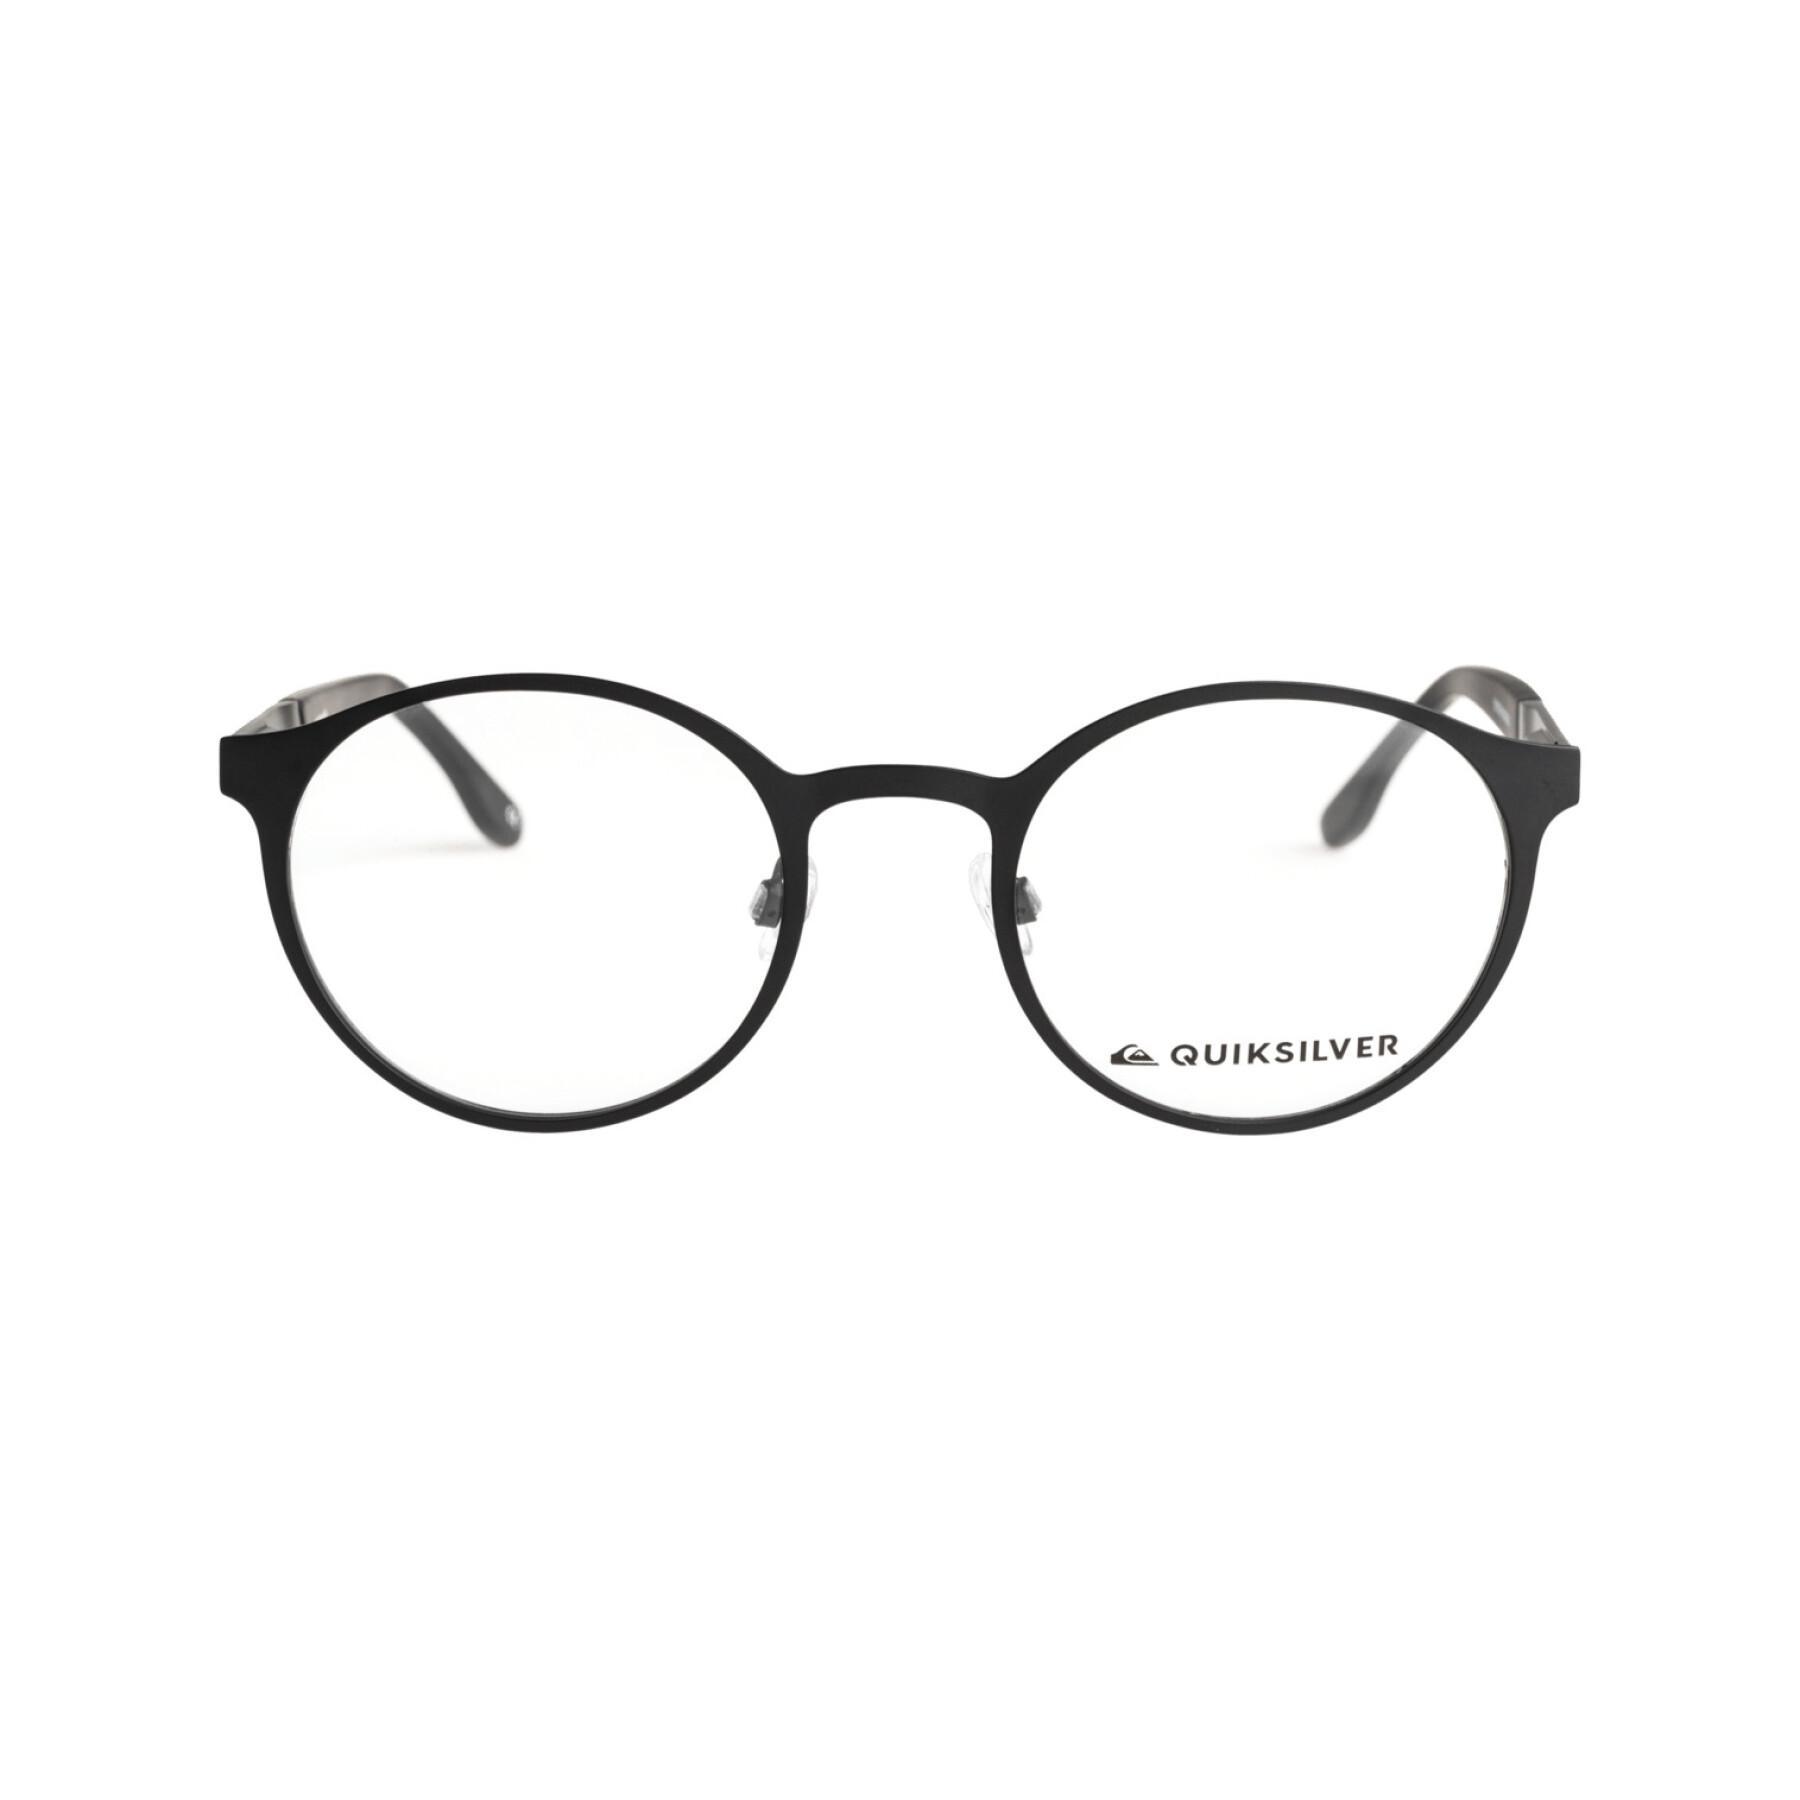 Eyeglasses Quiksilver I-Round - Fashion Accessories - Accessories | Sonnenbrillen